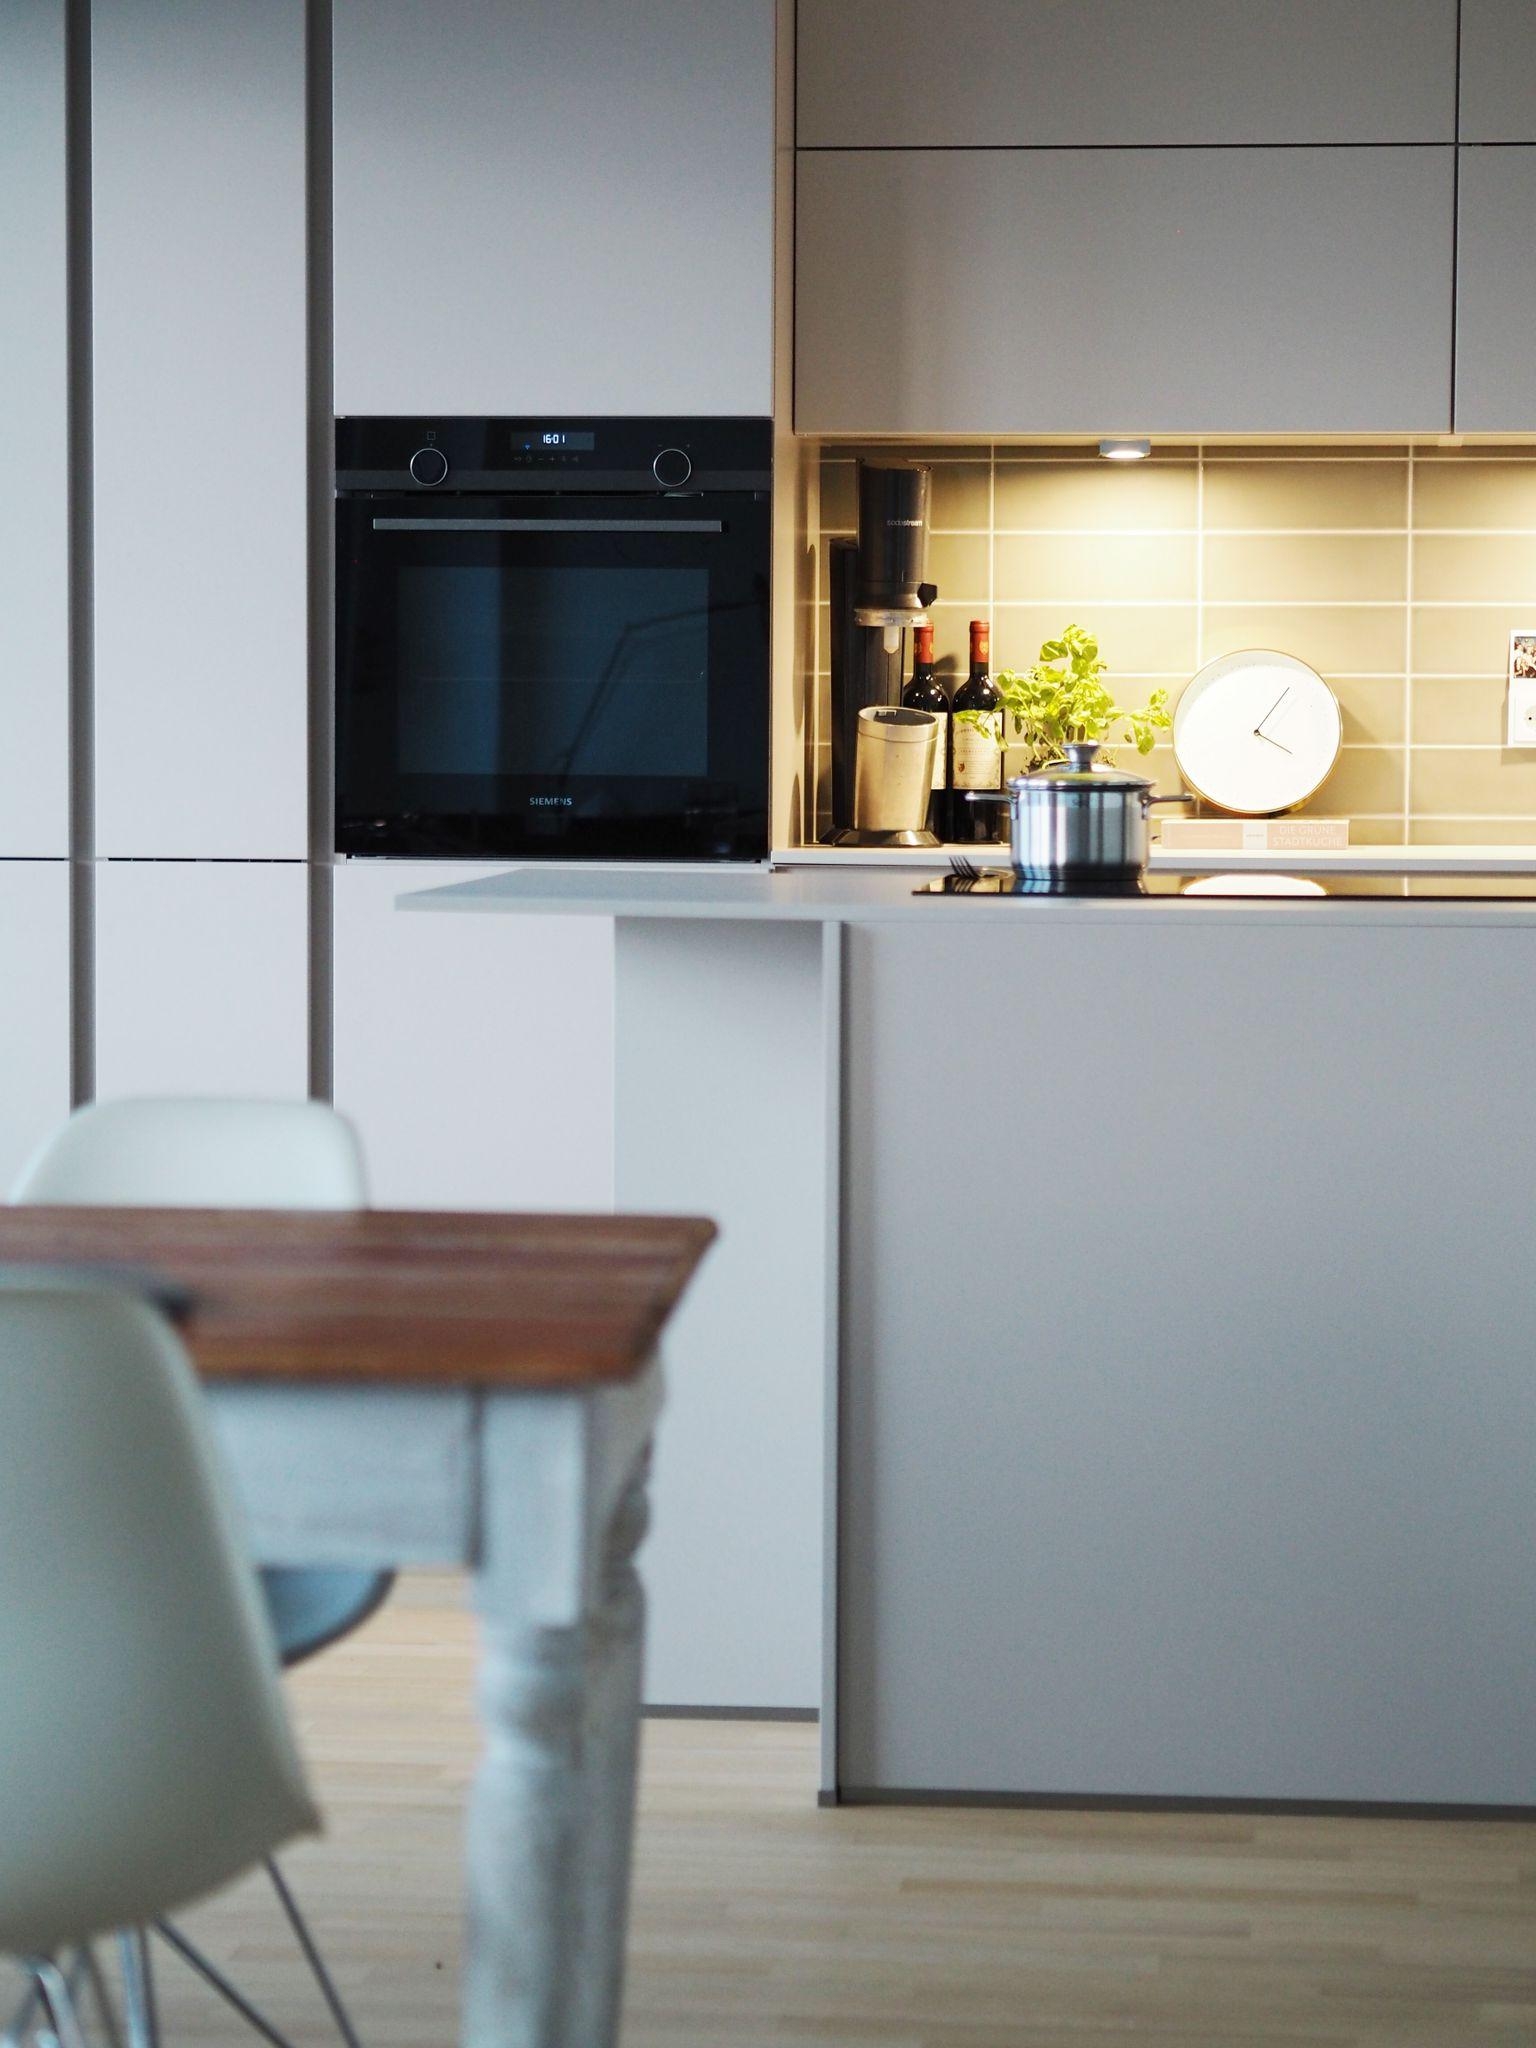 Küchen-Liebe 💛bei uns modern, minimalistisch und mit viel Stauraum #küche #küchenideen #küchenfliesen